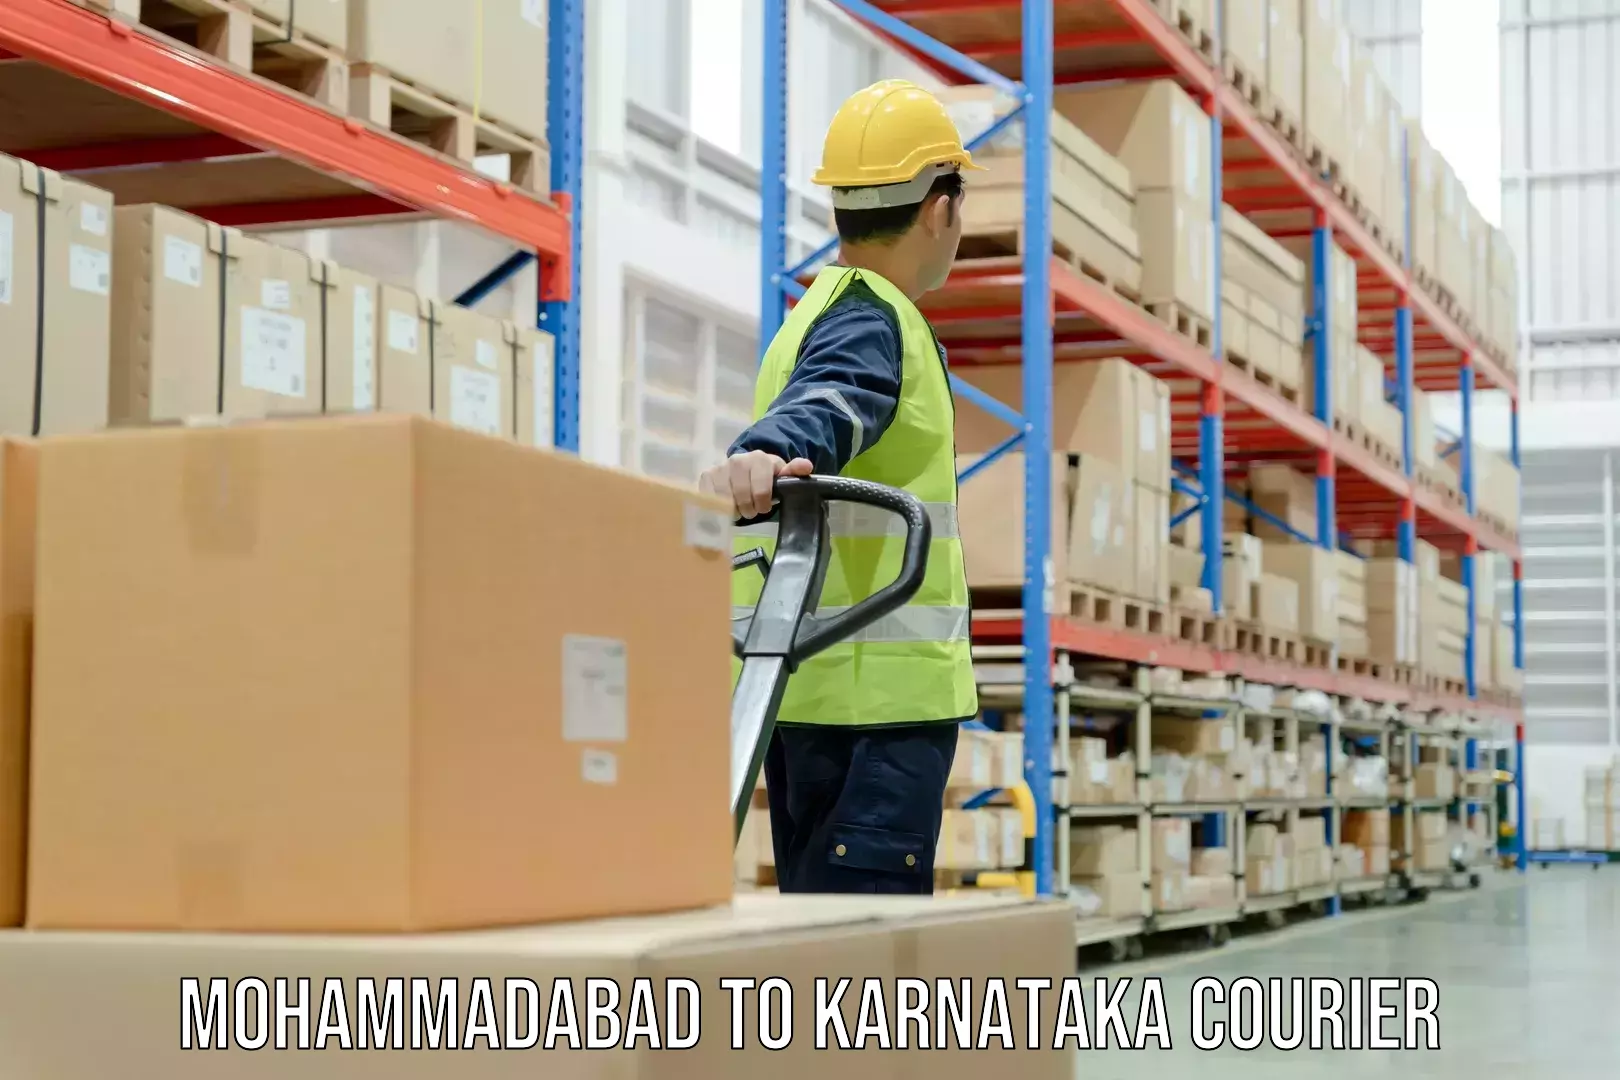 Delivery service partnership Mohammadabad to Karnataka